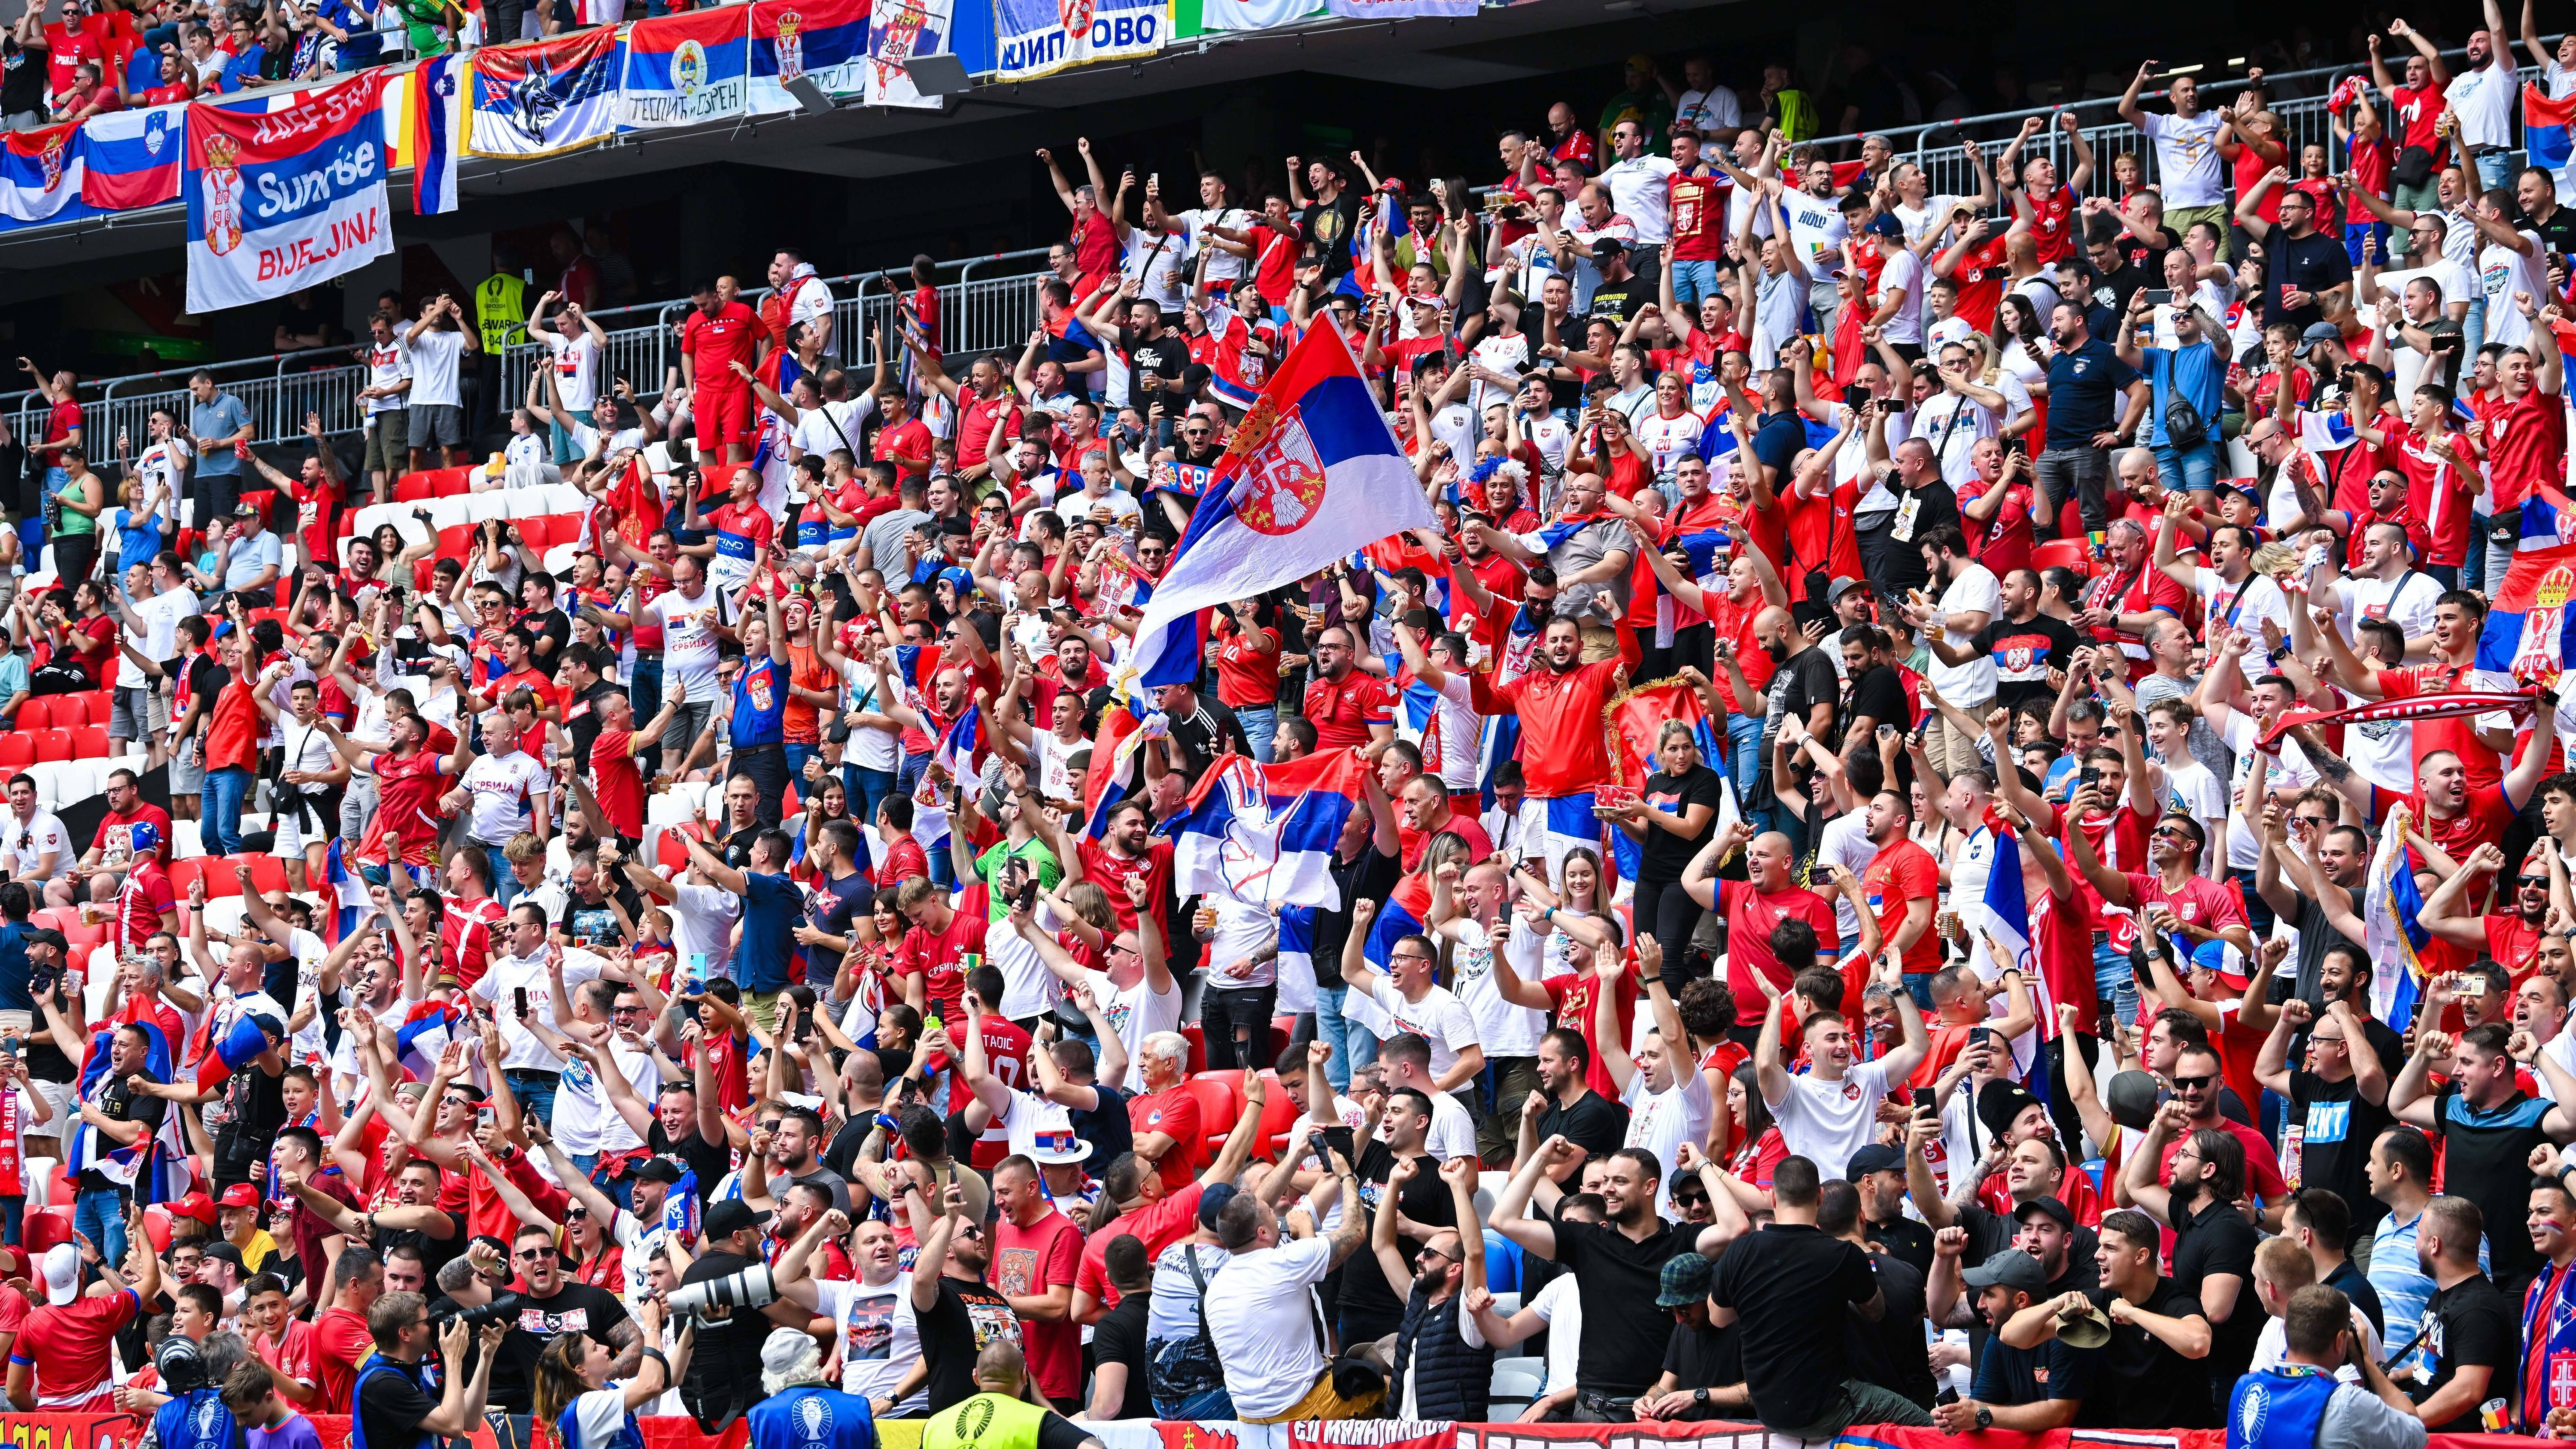 <strong>Serbiens Fans machen Alarm</strong><br>Im Innenraum der Arena liefern die serbischen Fans schon vor Anpfiff mächtigen Support. Nach dem 0:1 gegen England gilt es heute, die Landsleute zum Erfolg zu schreien.